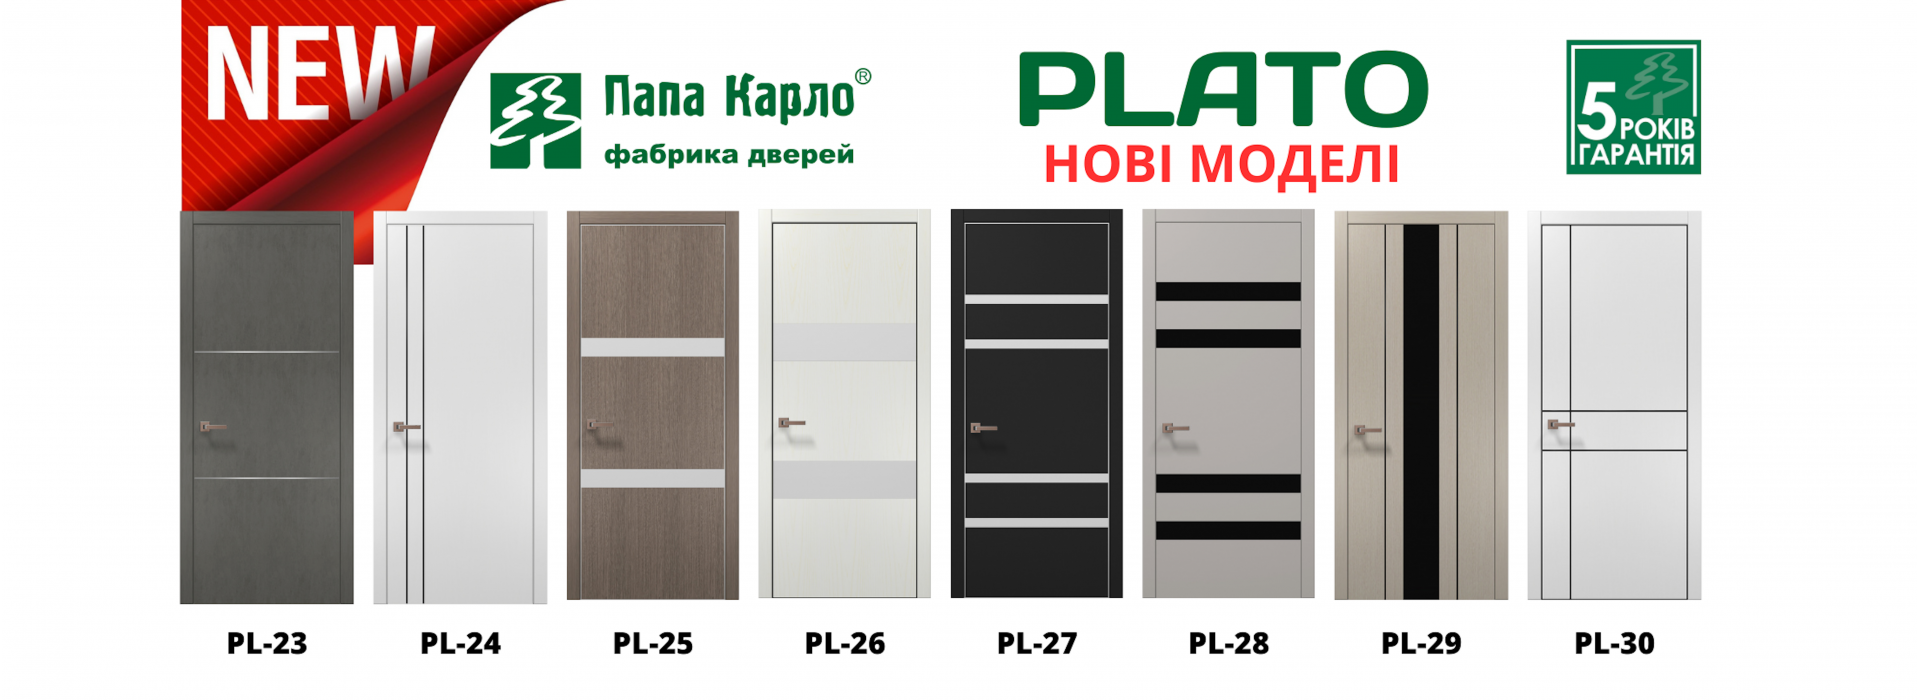 Нові моделі дверей колекції PLATO